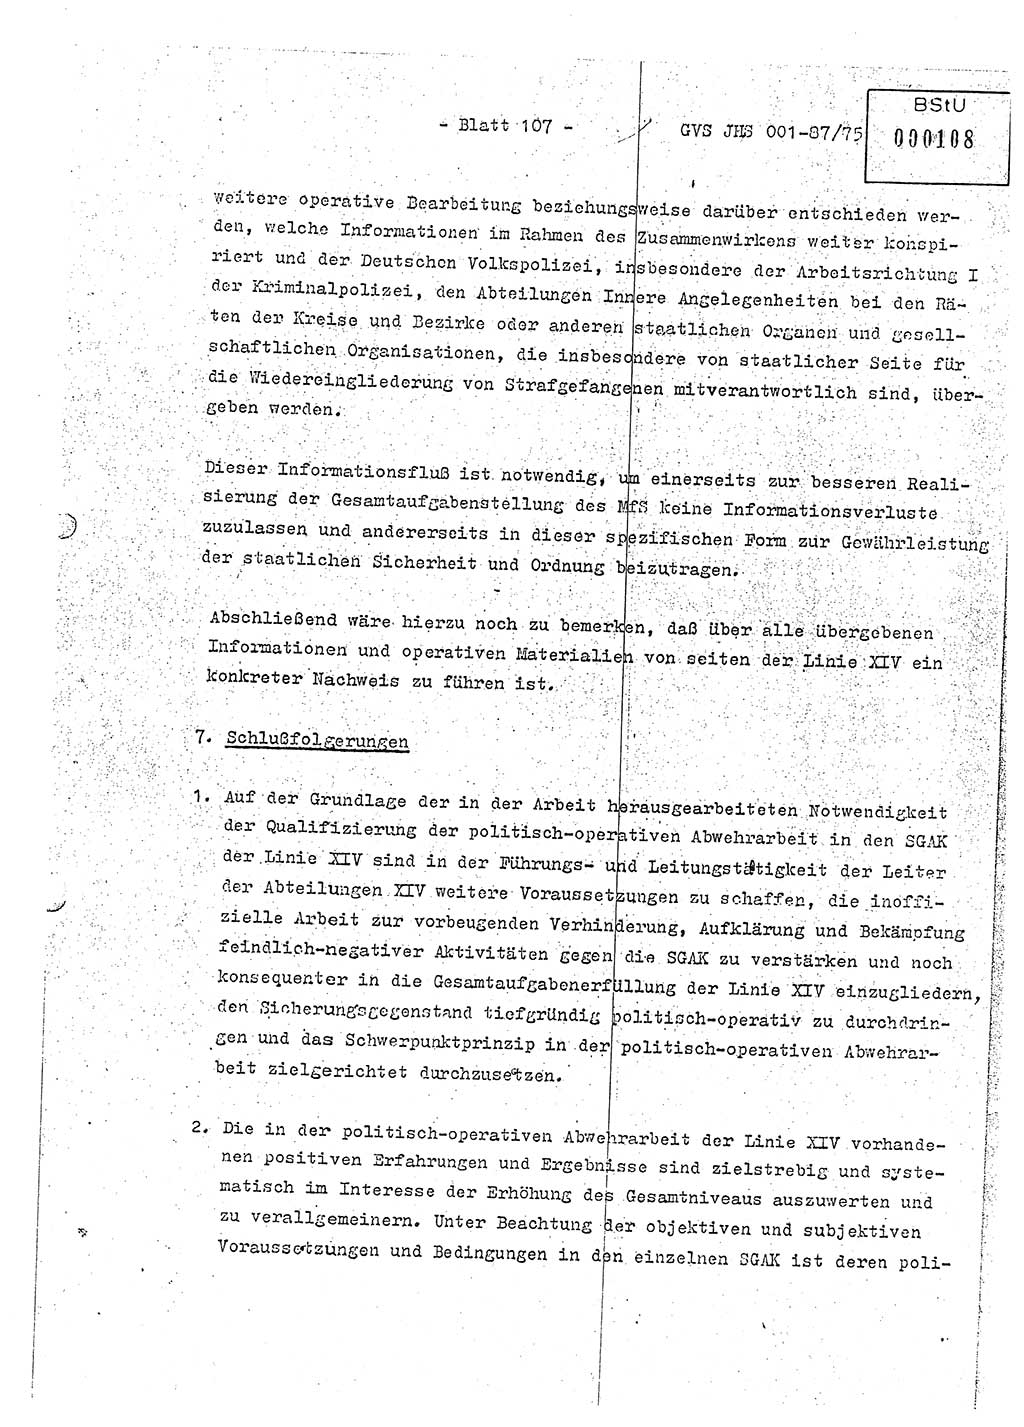 Diplomarbeit Hauptmann Volkmar Heinz (Abt. ⅩⅣ), Oberleutnant Lothar Rüdiger (BV Lpz. Abt. Ⅺ), Ministerium für Staatssicherheit (MfS) [Deutsche Demokratische Republik (DDR)], Juristische Hochschule (JHS), Geheime Verschlußsache (GVS) o001-87/75, Potsdam 1975, Seite 107 (Dipl.-Arb. MfS DDR JHS GVS o001-87/75 1975, S. 107)